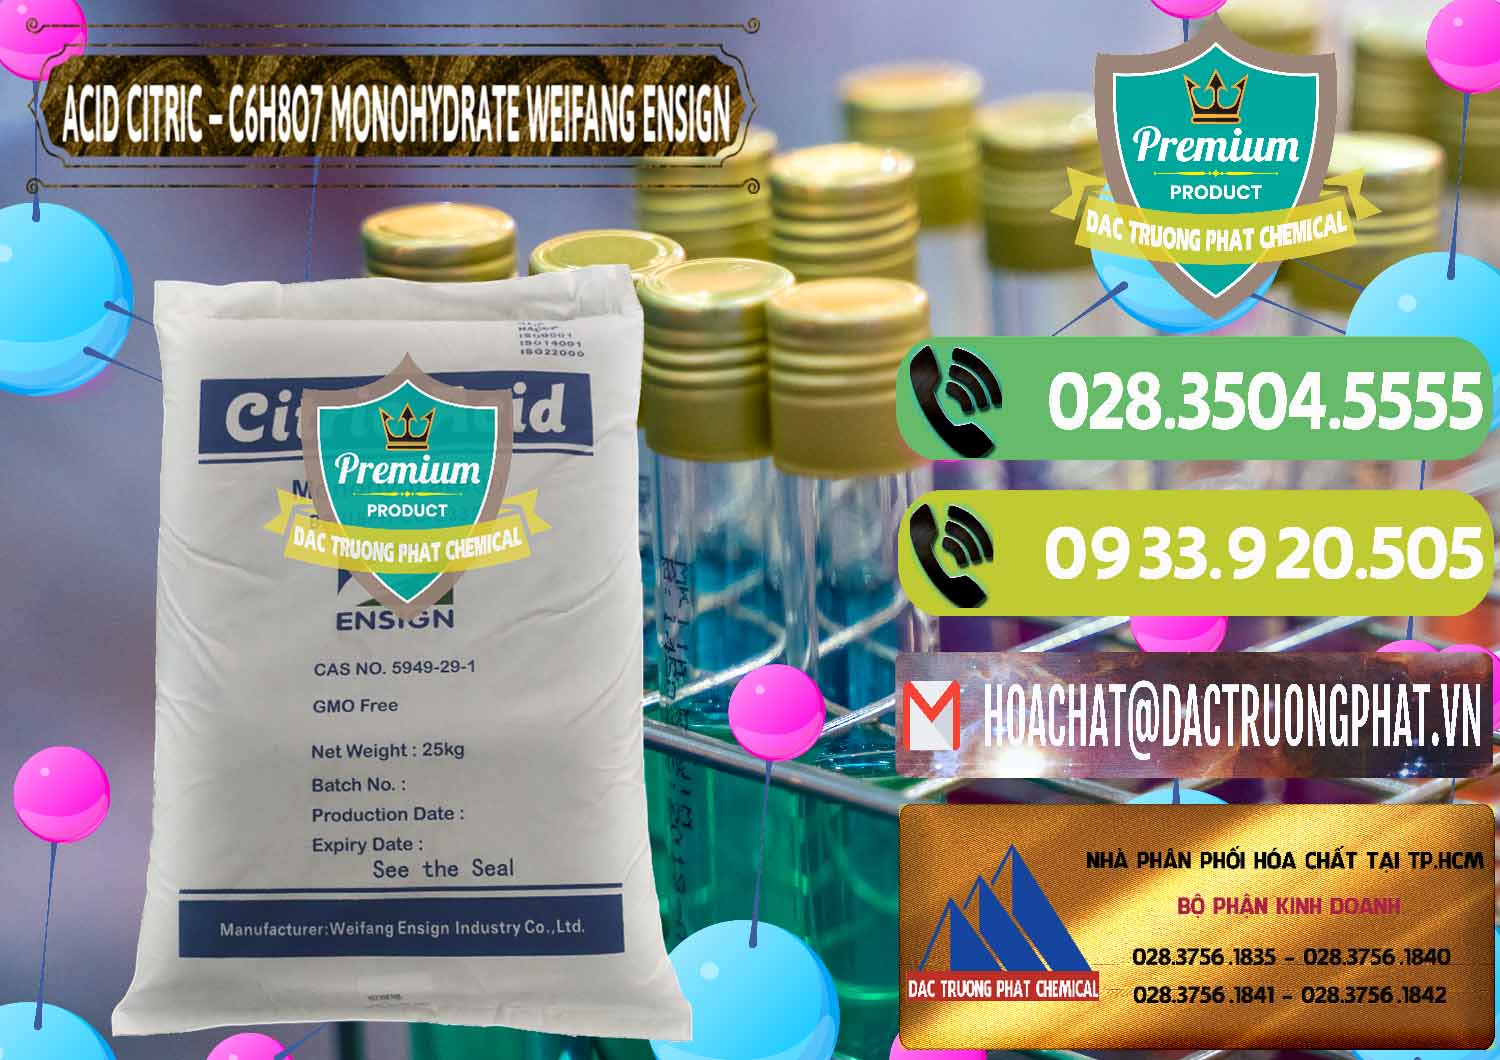 Nơi chuyên kinh doanh & bán Acid Citric - Axit Citric Monohydrate Weifang Trung Quốc China - 0009 - Cty cung cấp và phân phối hóa chất tại TP.HCM - hoachatmientay.vn